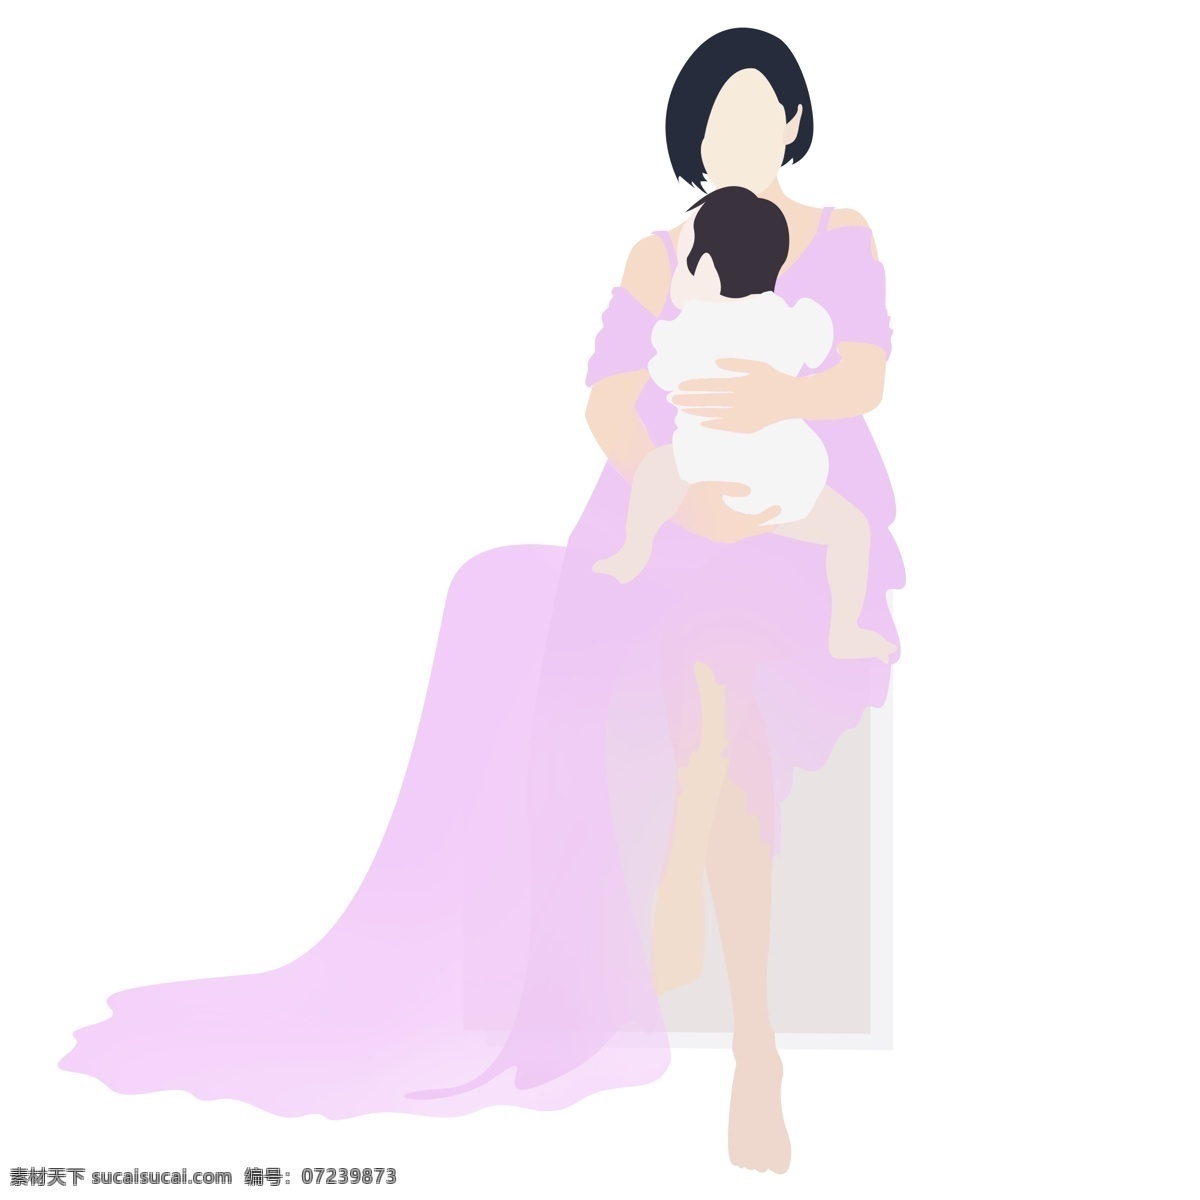 怀抱 婴儿 母亲 免 扣 矢量图 母亲节 母爱 温馨 温暖 温情 母子 母女 艺术写真 藕紫色 纱裙 短发 婴儿服